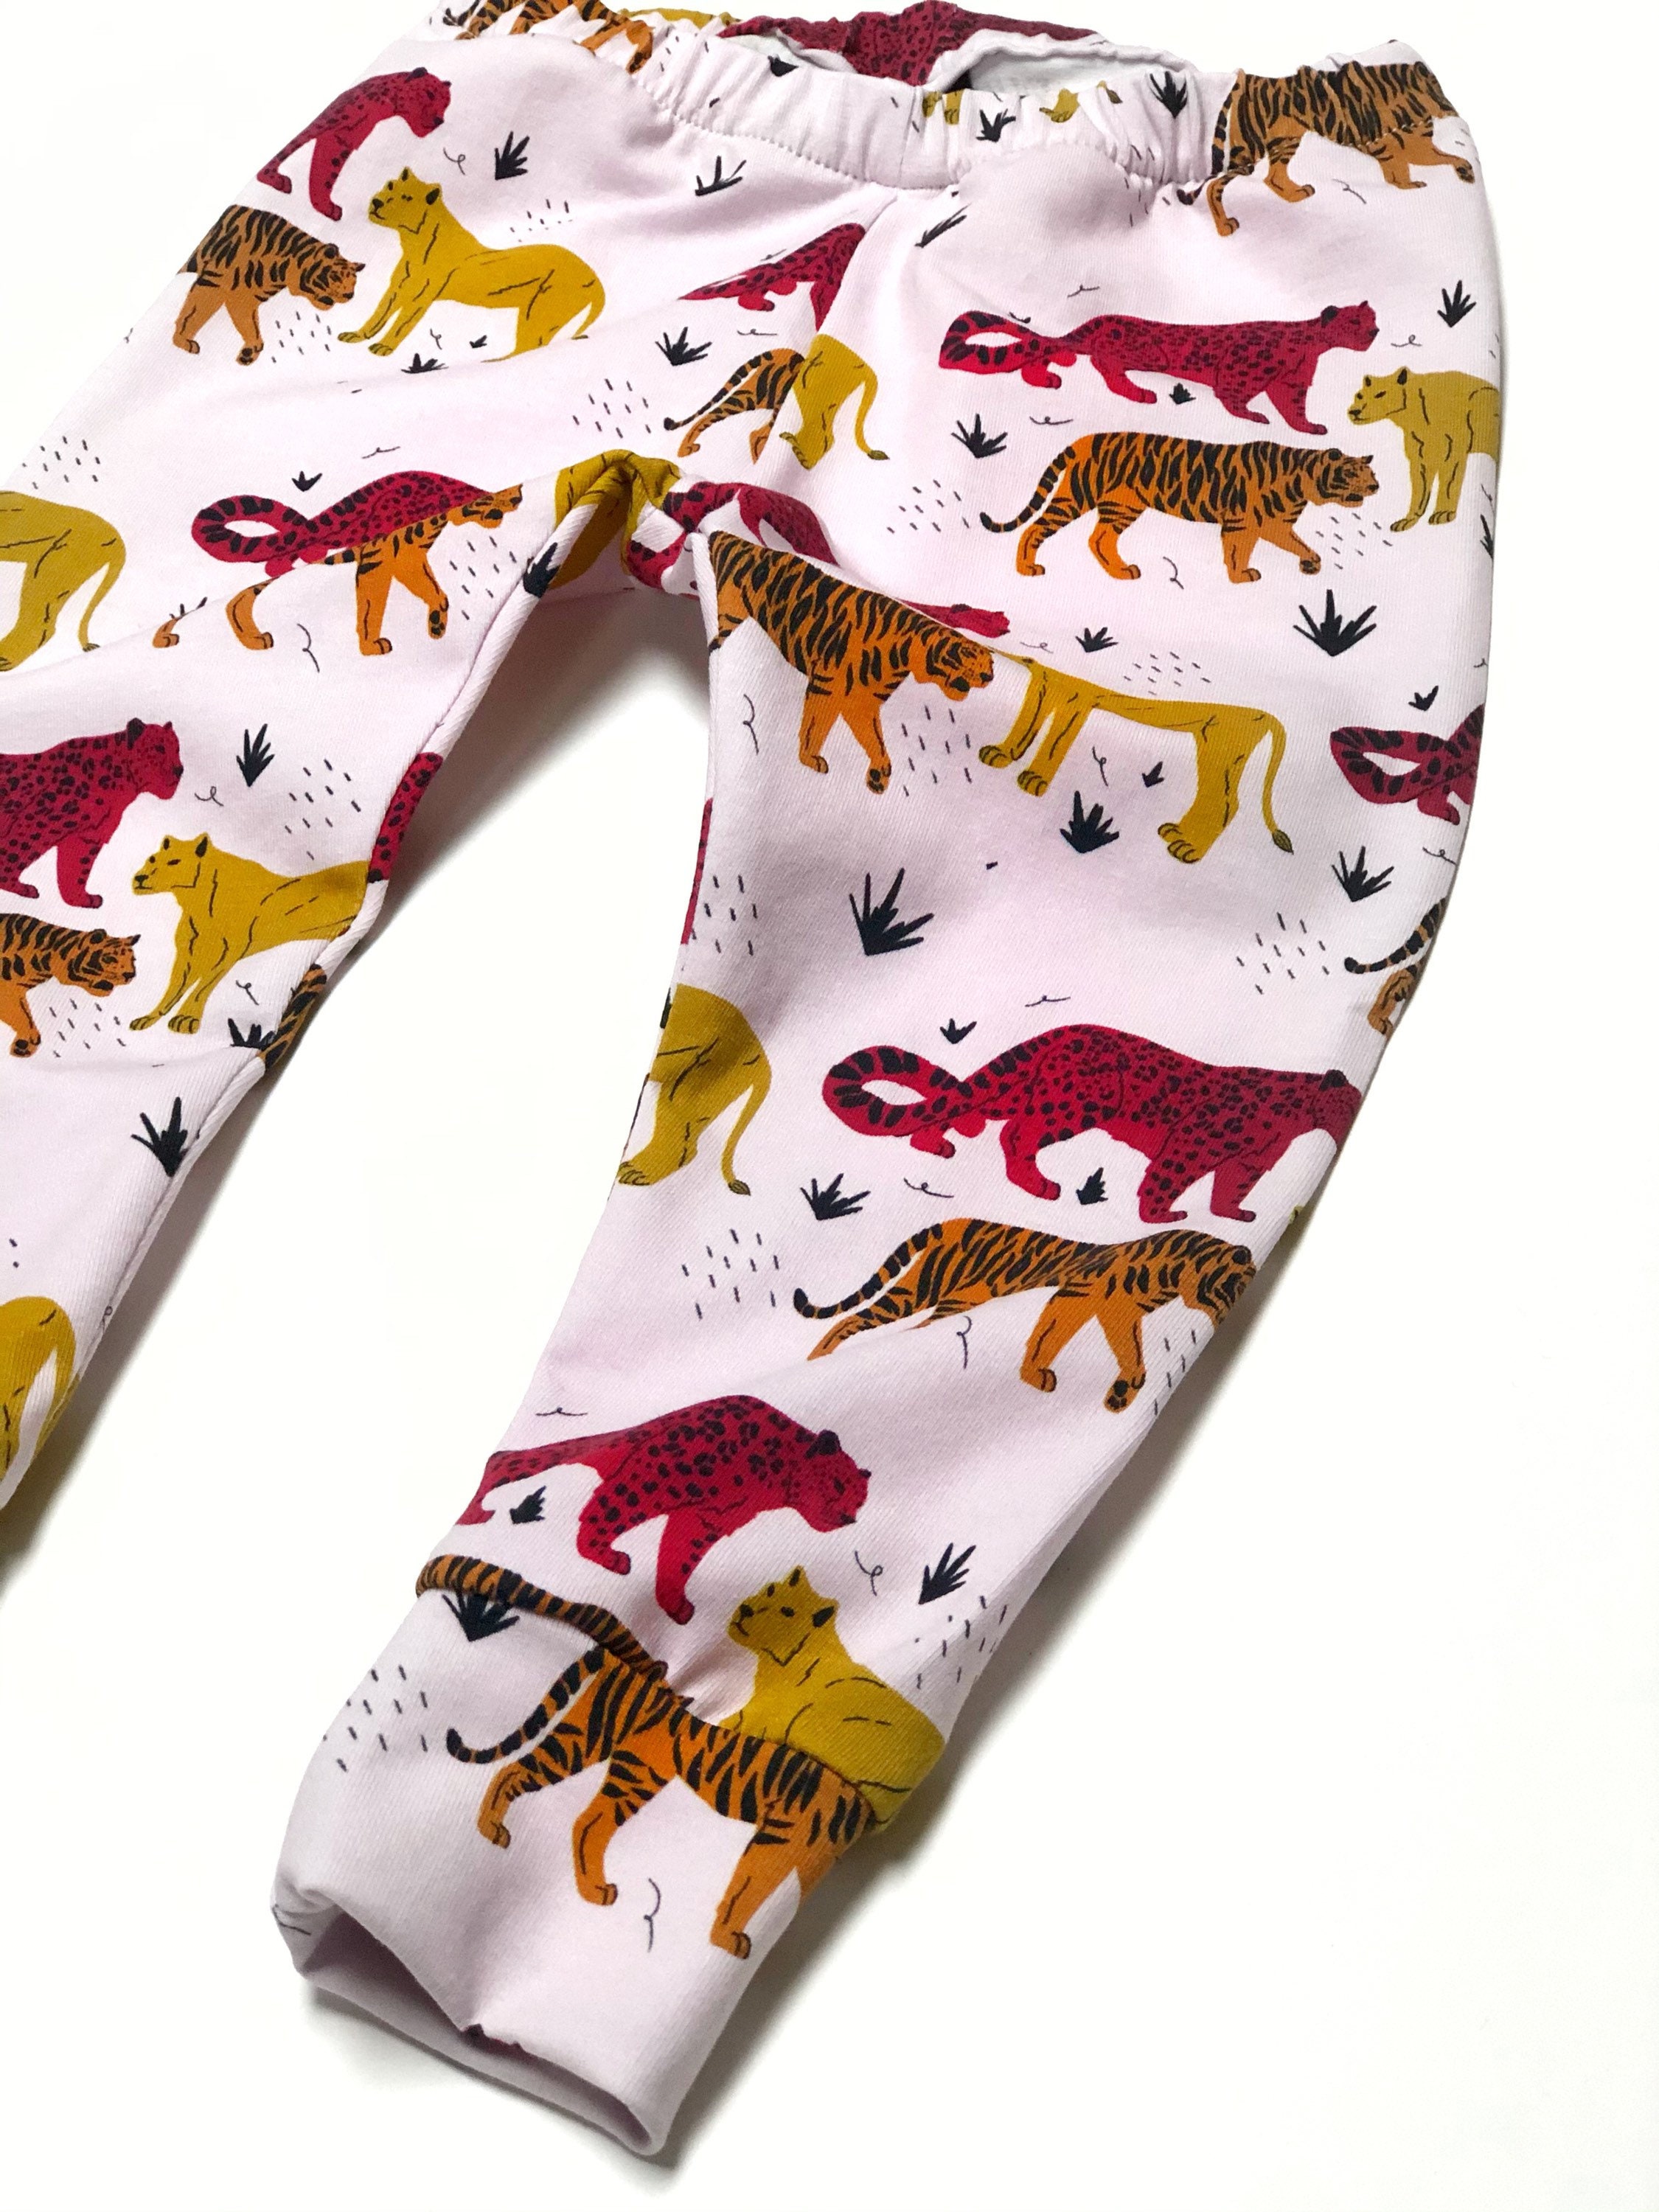 Tiger Print : Toddler Clothing : Target